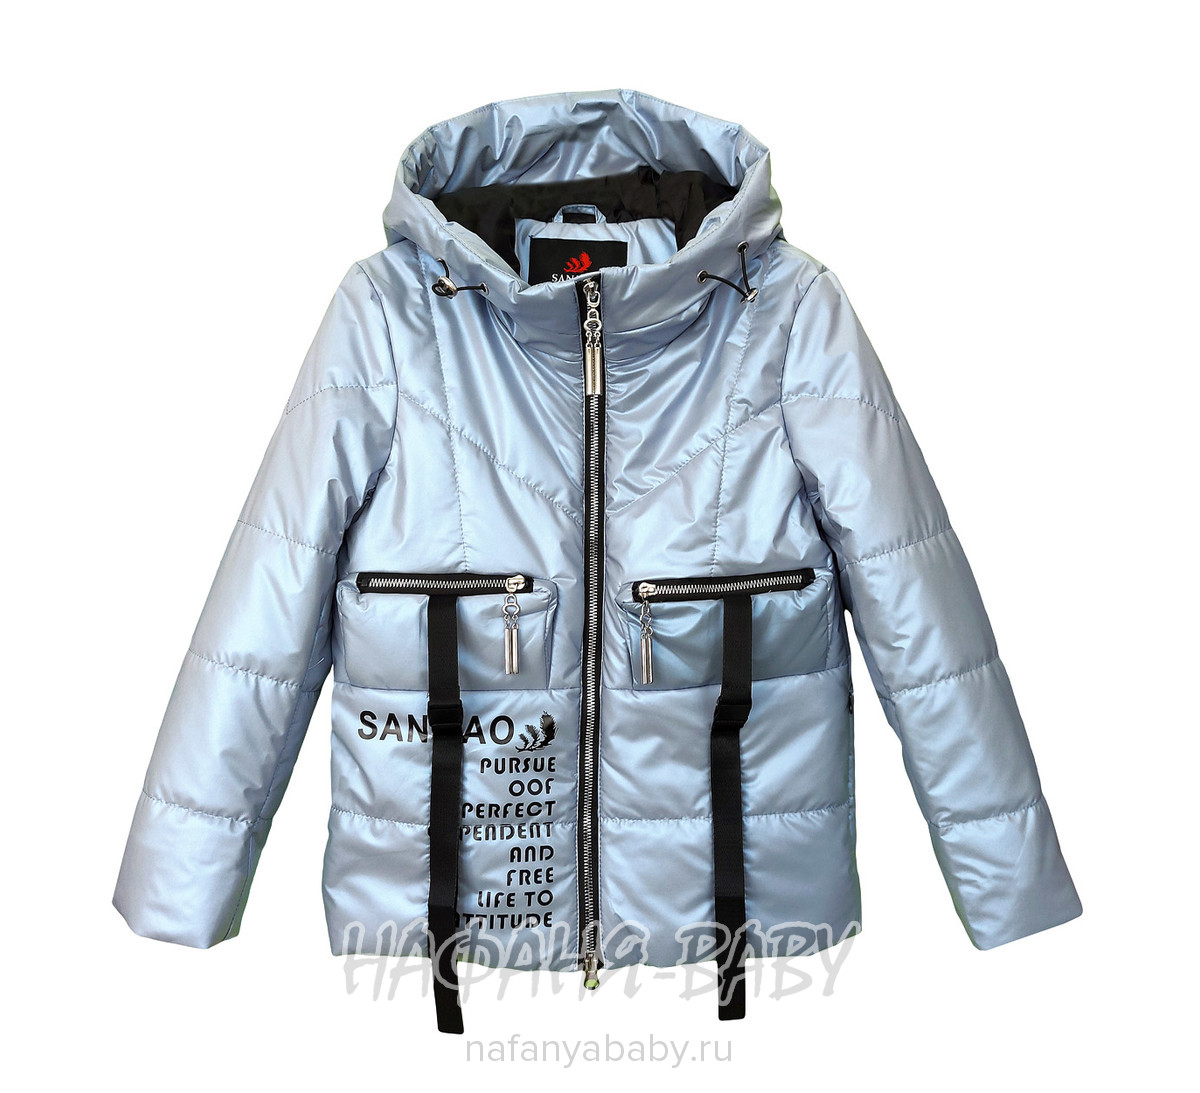 Демисезонная куртка для девочки SANMAO арт: 215, 5-9 лет, 10-15 лет, цвет серый, оптом Китай (Пекин)